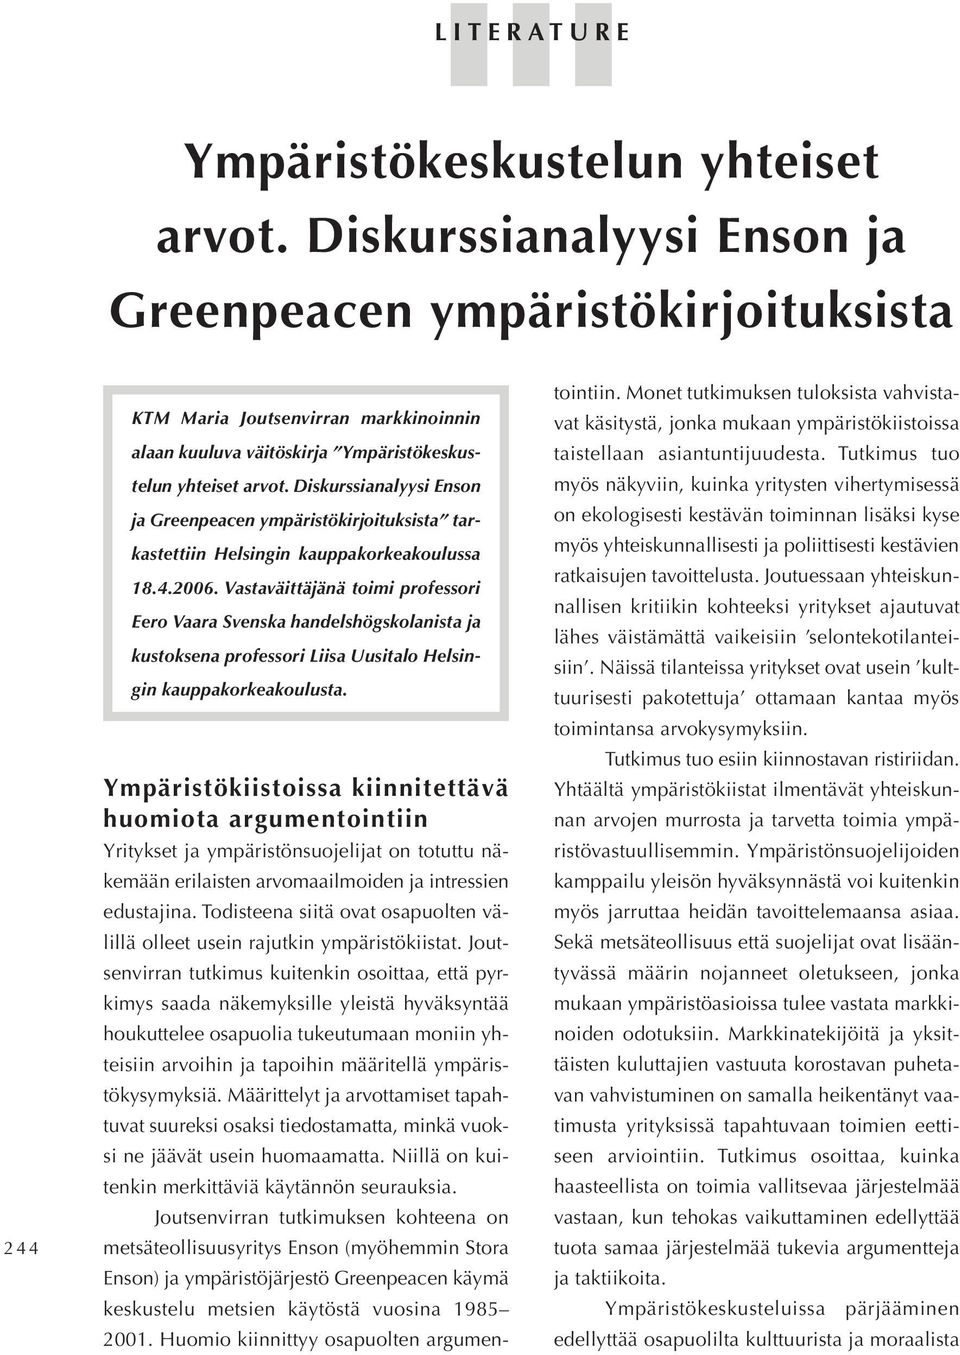 Diskurssianalyysi Enson ja Greenpeacen ympäristökirjoituksista tarkastettiin Helsingin kauppakorkeakoulussa 18.4.2006.